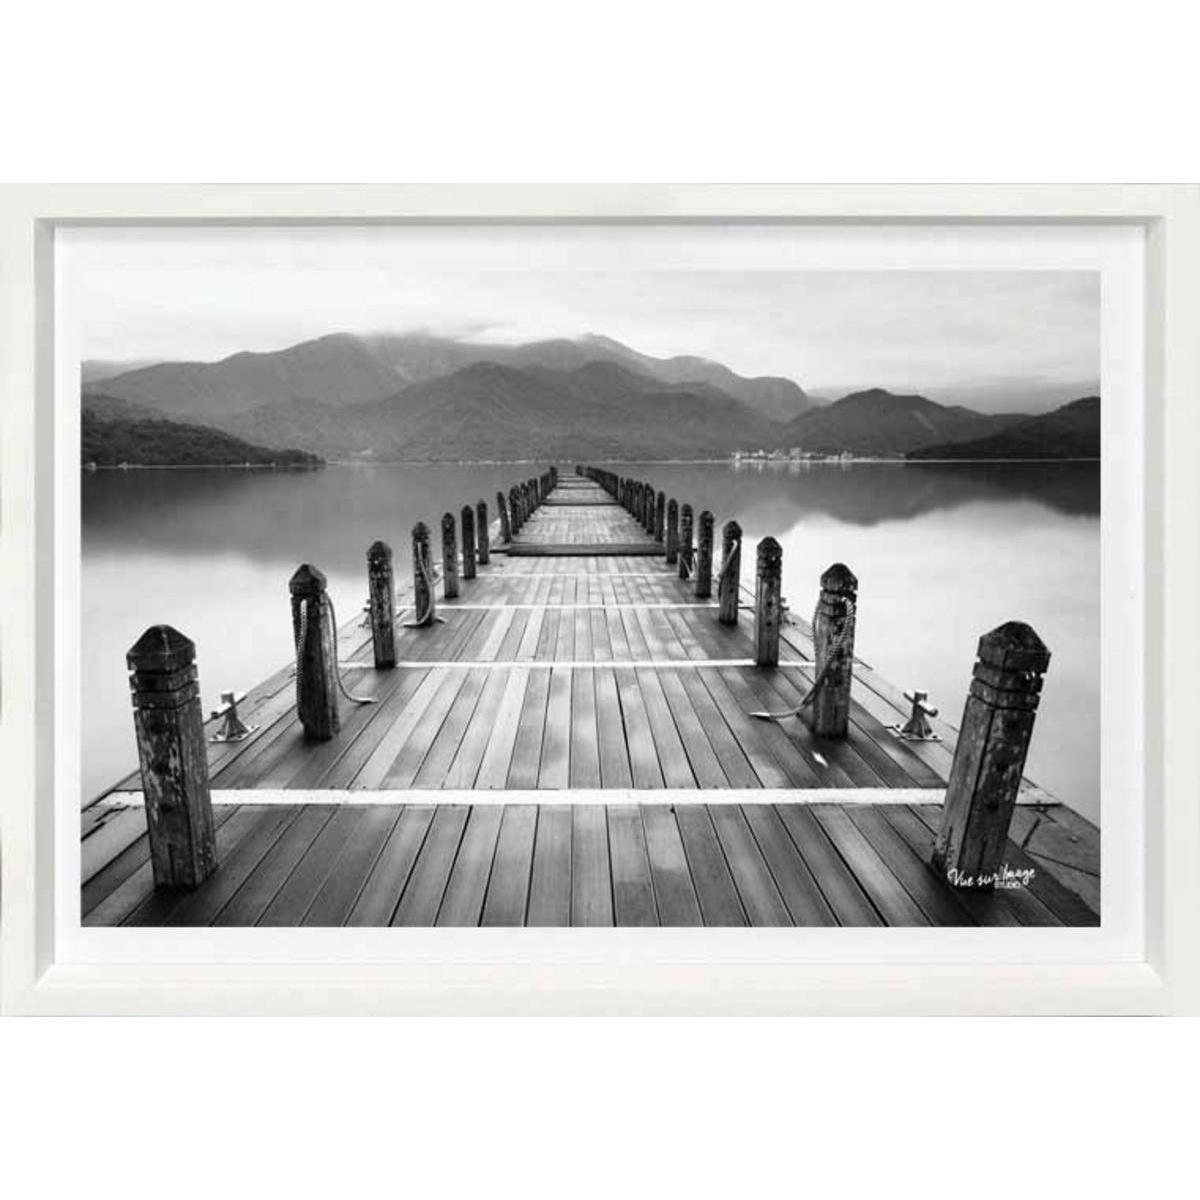 Cadre photo décoratif - Plastique - 35 x 25 cm - Noir et blanc